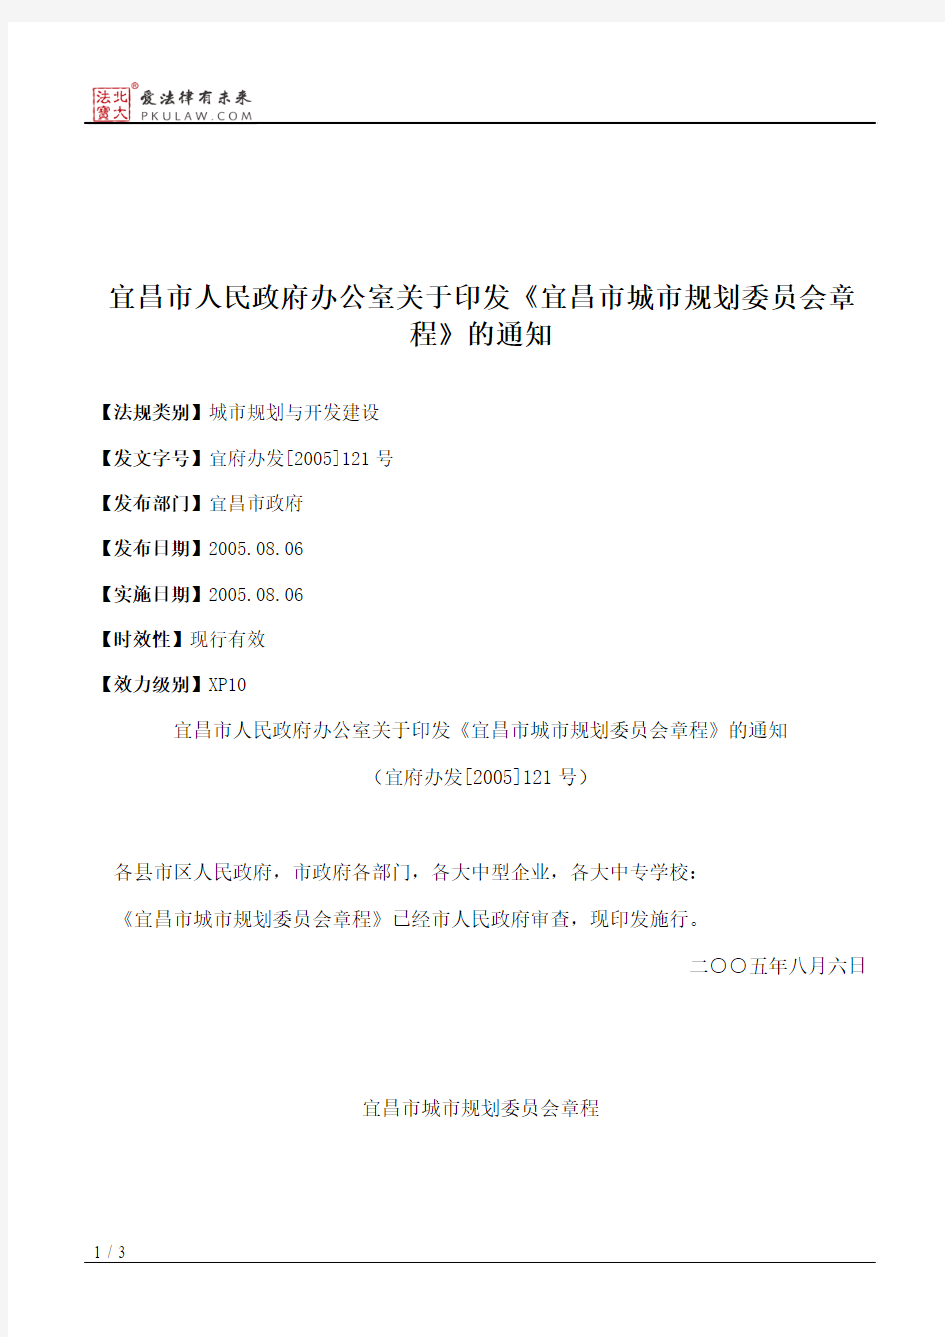 宜昌市人民政府办公室关于印发《宜昌市城市规划委员会章程》的通知